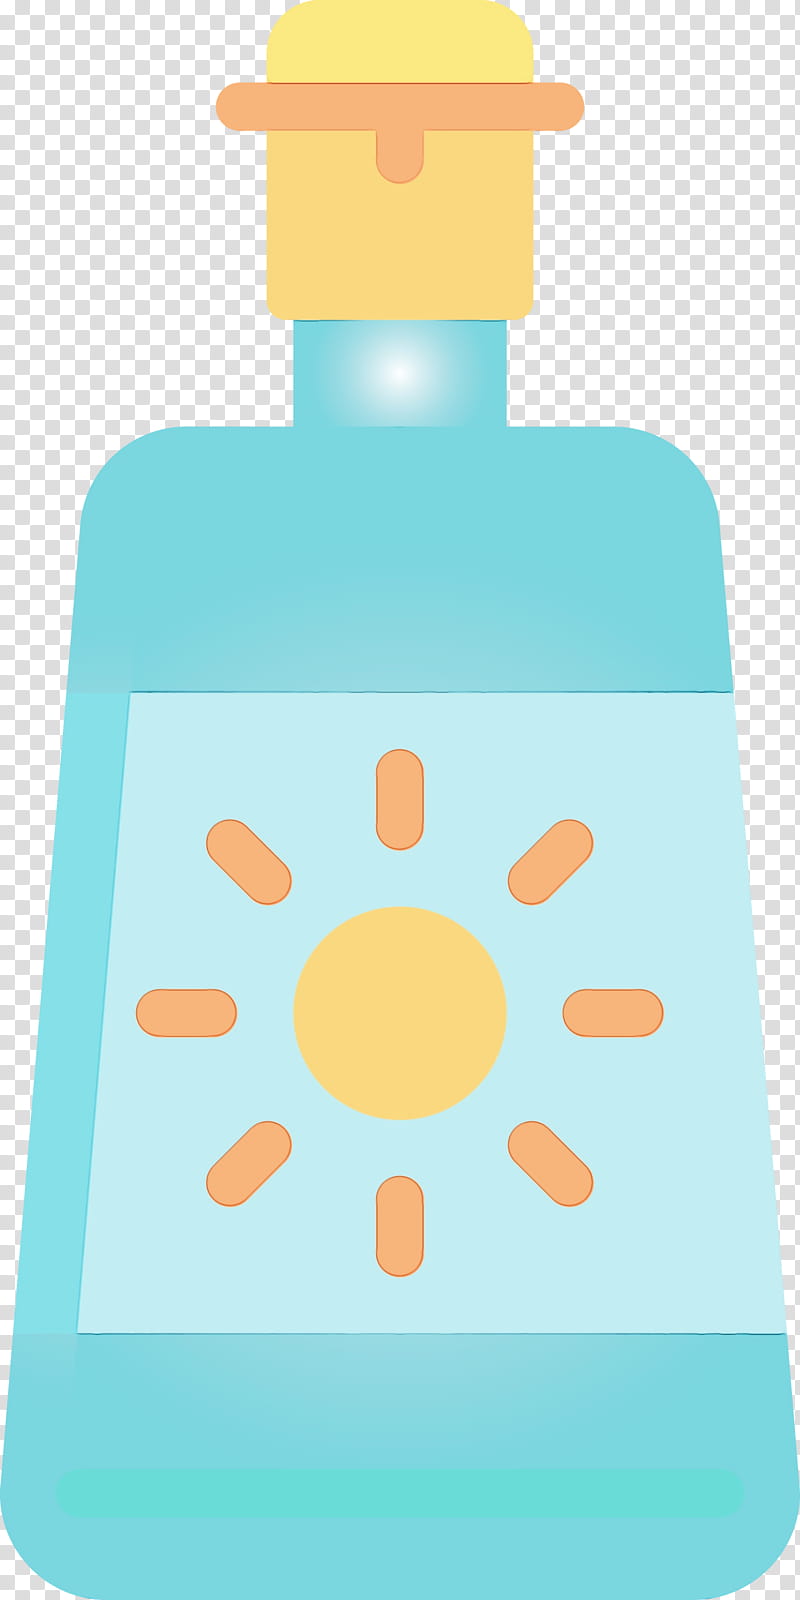 Plastic bottle, Sunblock, Watercolor, Paint, Wet Ink, Orange, Water Bottle transparent background PNG clipart